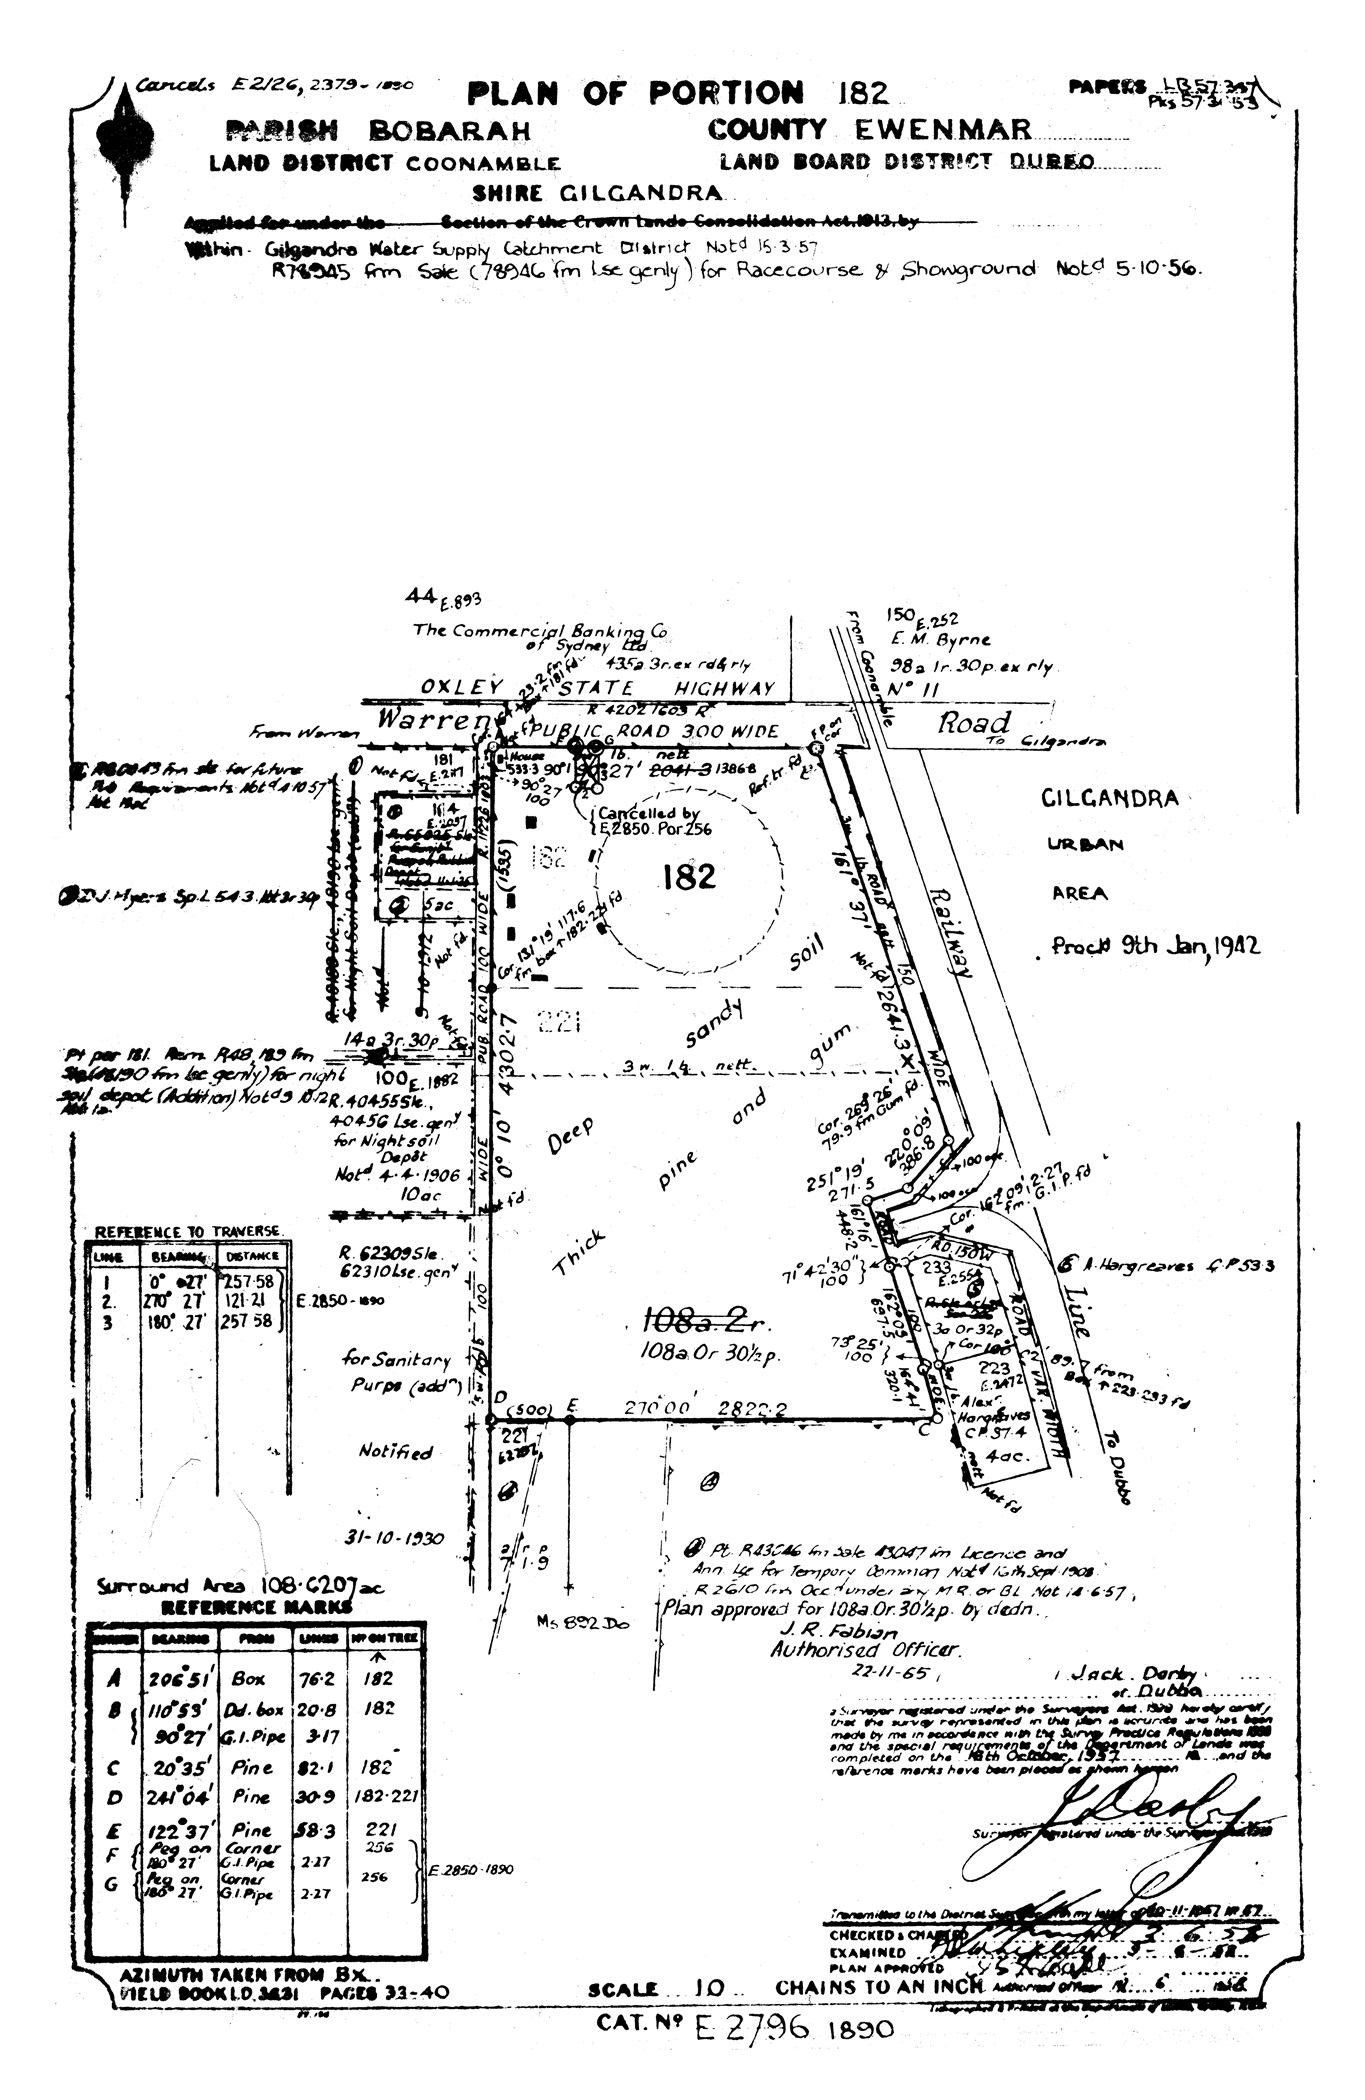 1965 Showground Plan